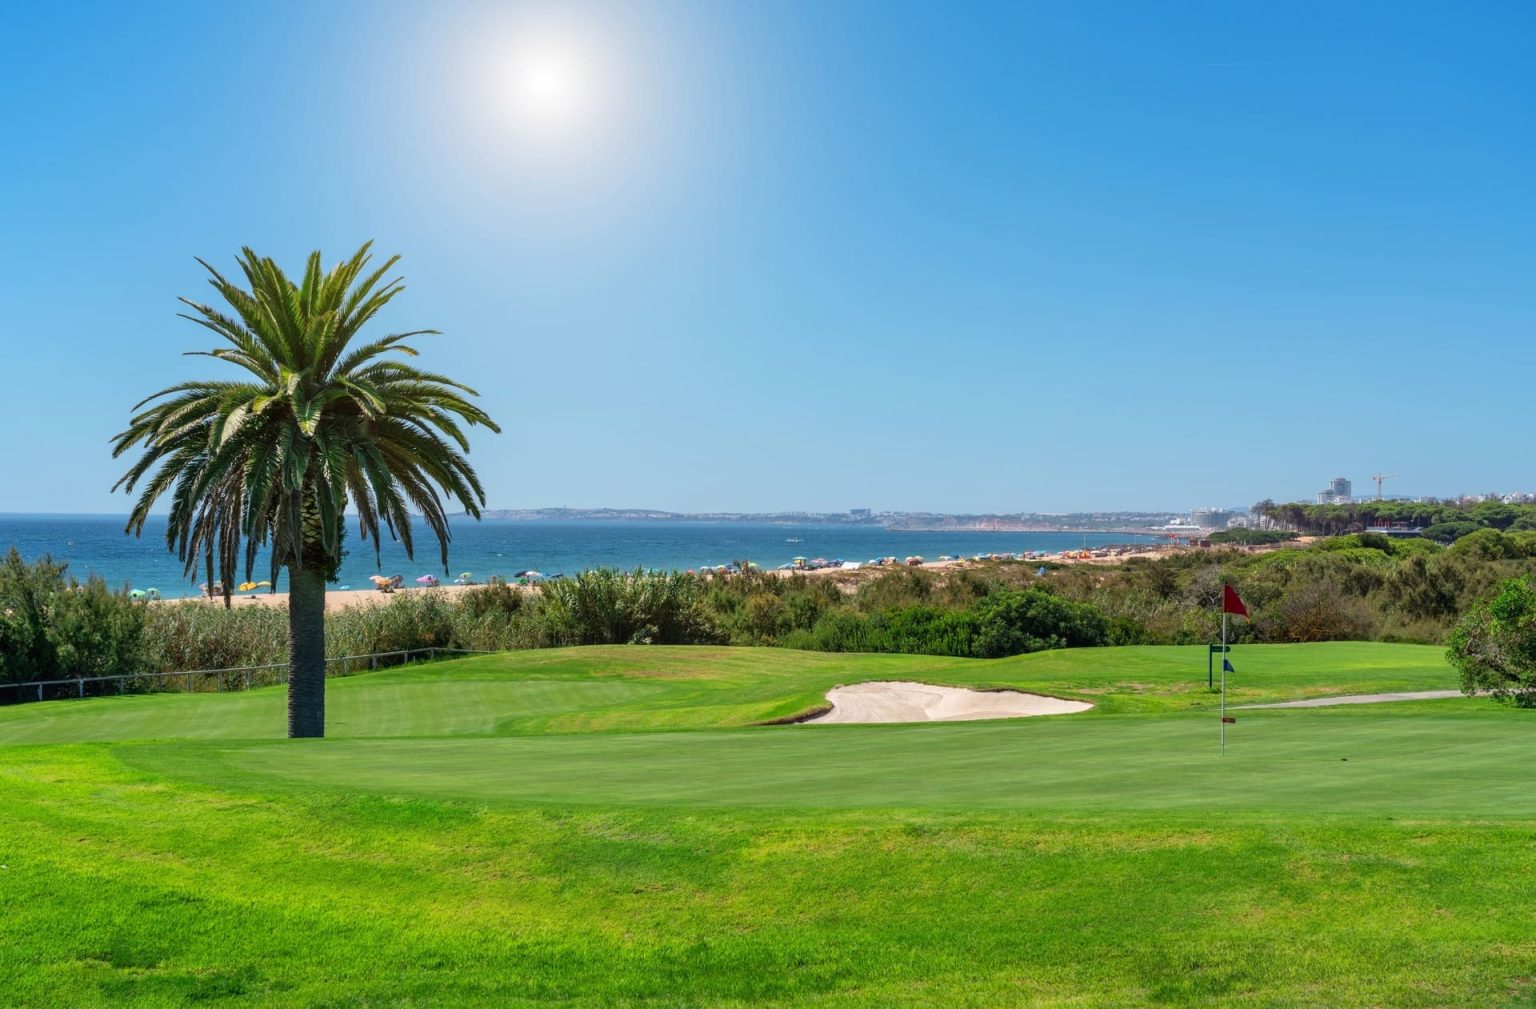 Campos de golfe no Algarve | Rocha Brava Village Resort